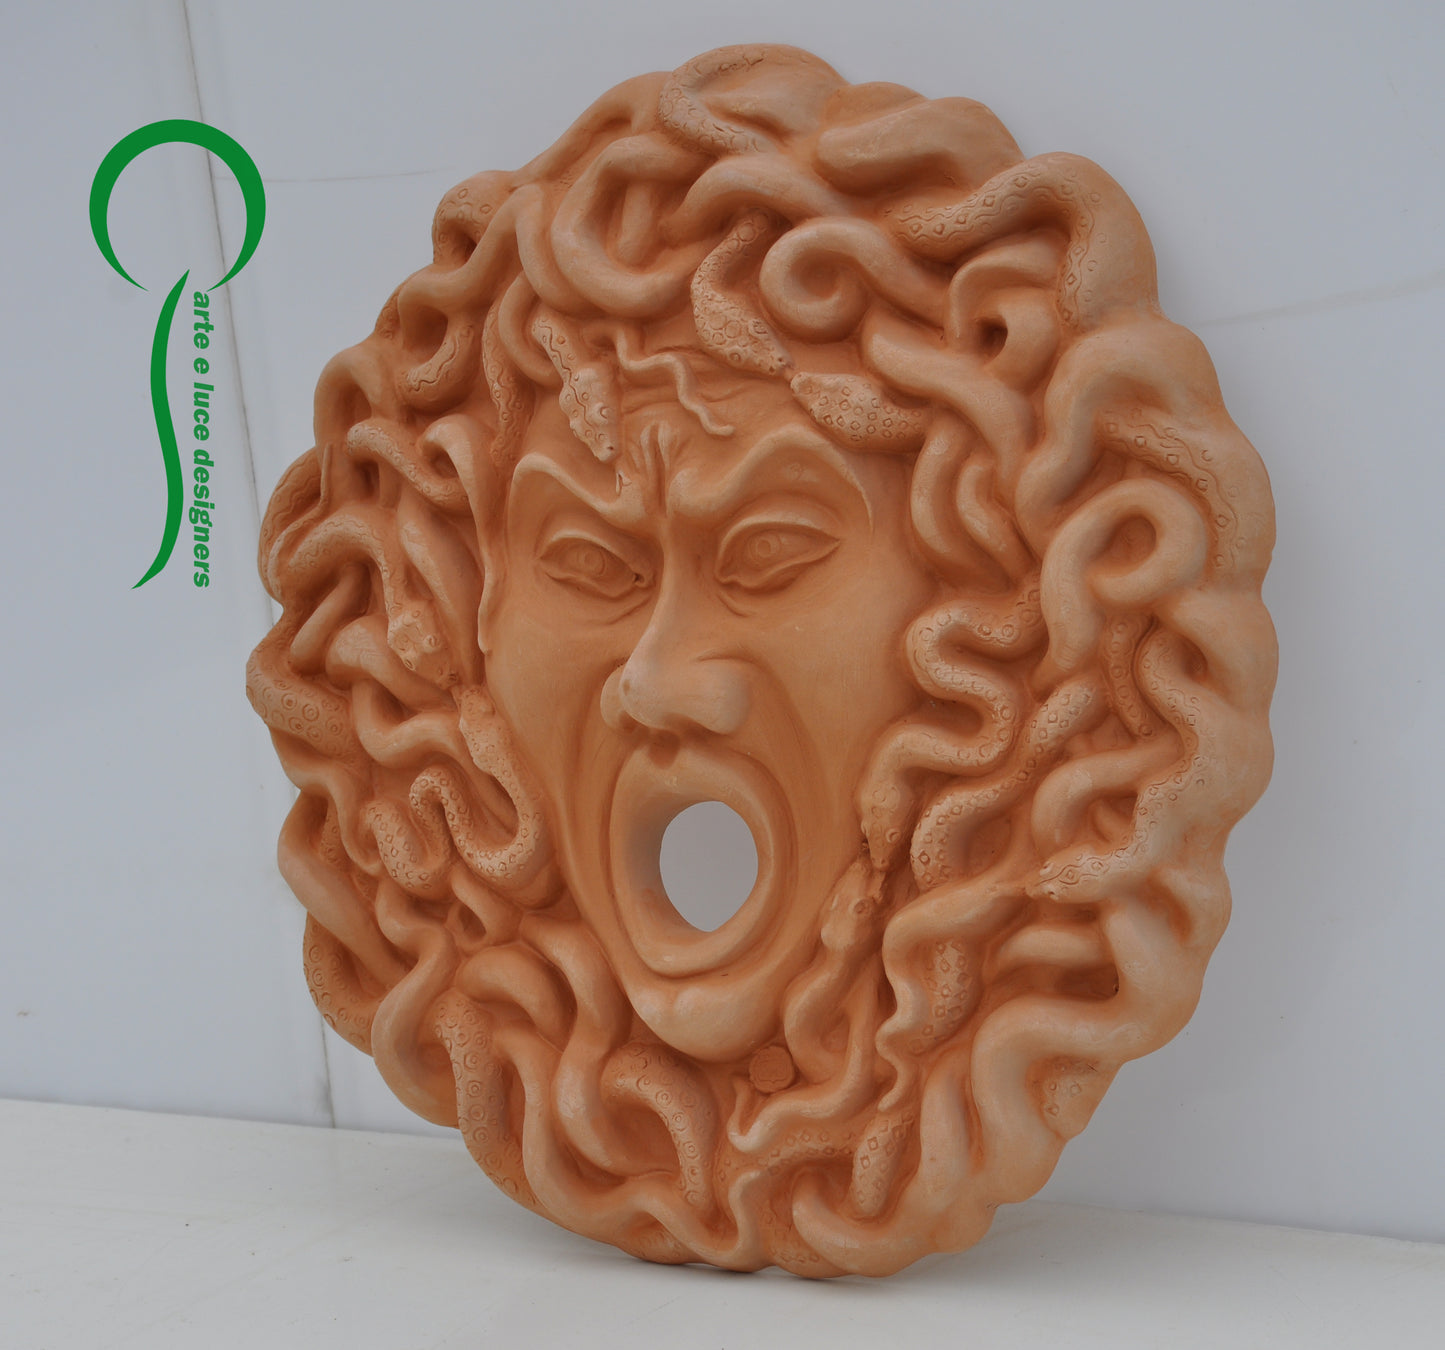 Medusa in terracotta Siciliana per fontana o decorazione da muro parete murale